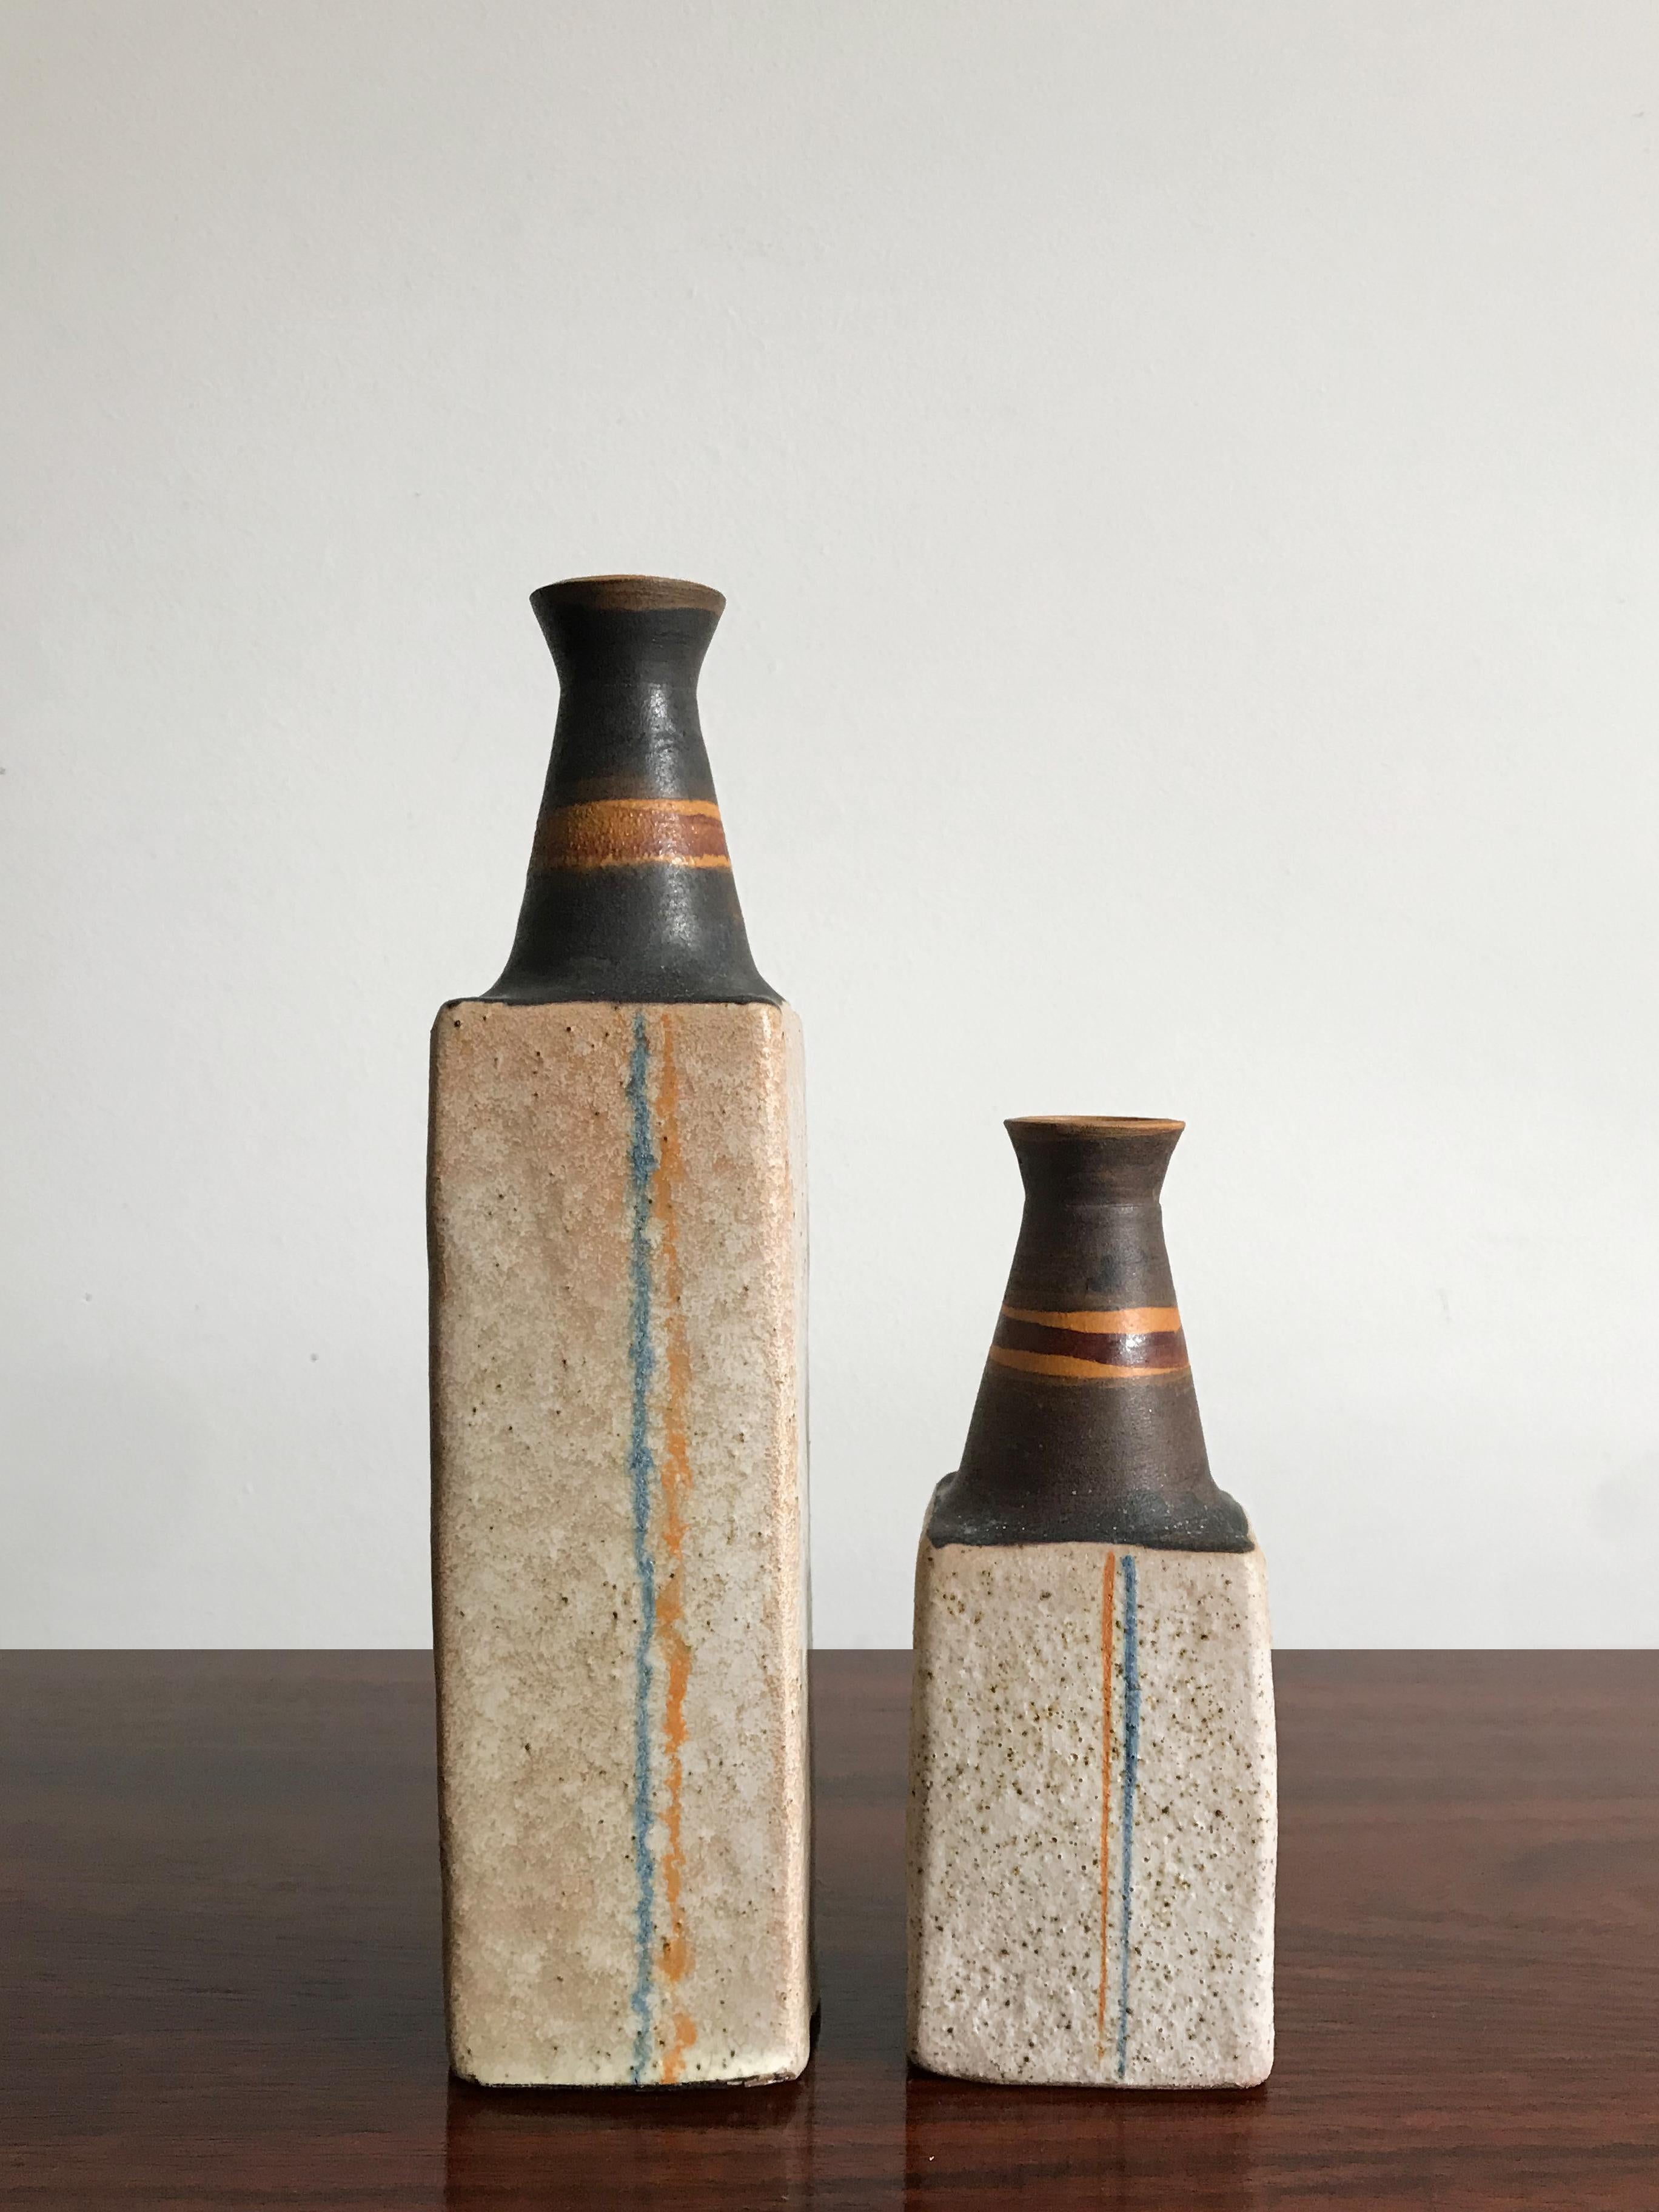 Ivo Sassi Mid-Century Modern Design Italian Ceramic Vases Bottles Set, 1950s For Sale 2